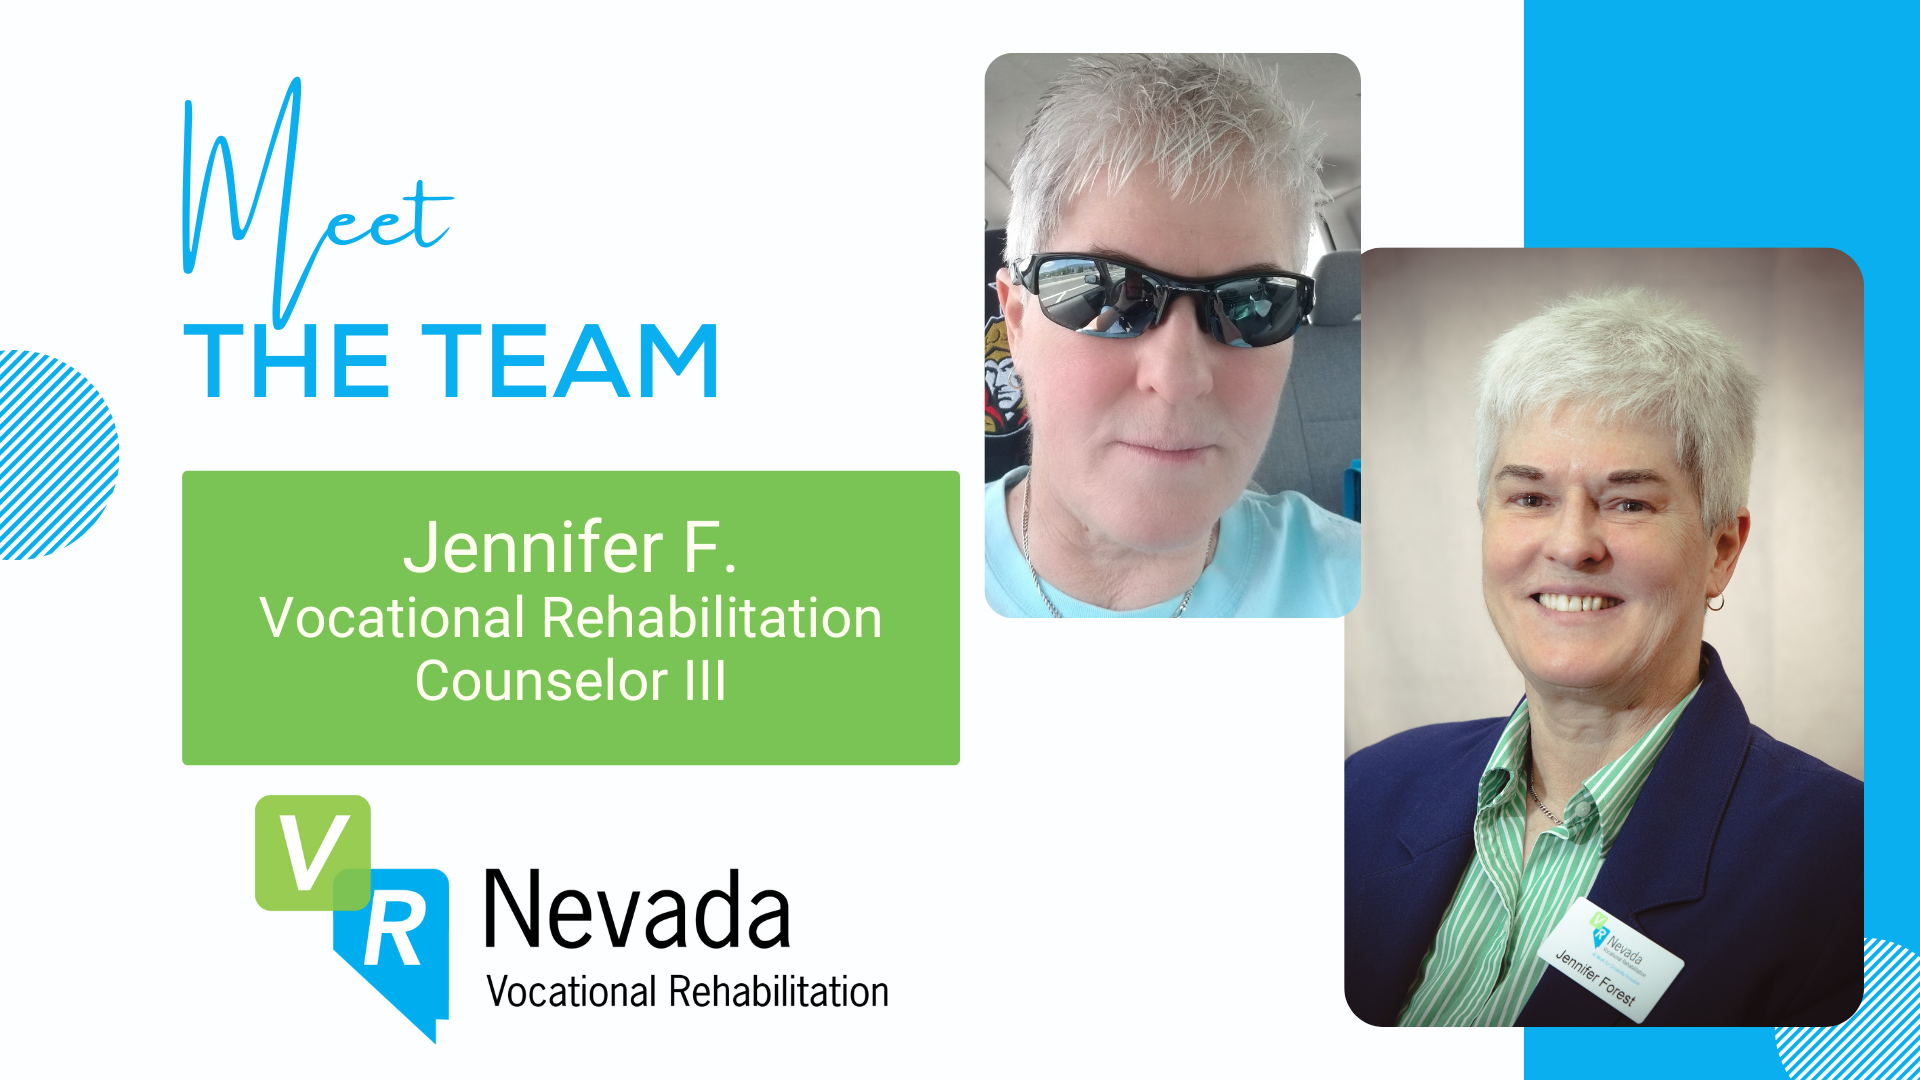 Meet the Team: Jennifer F.